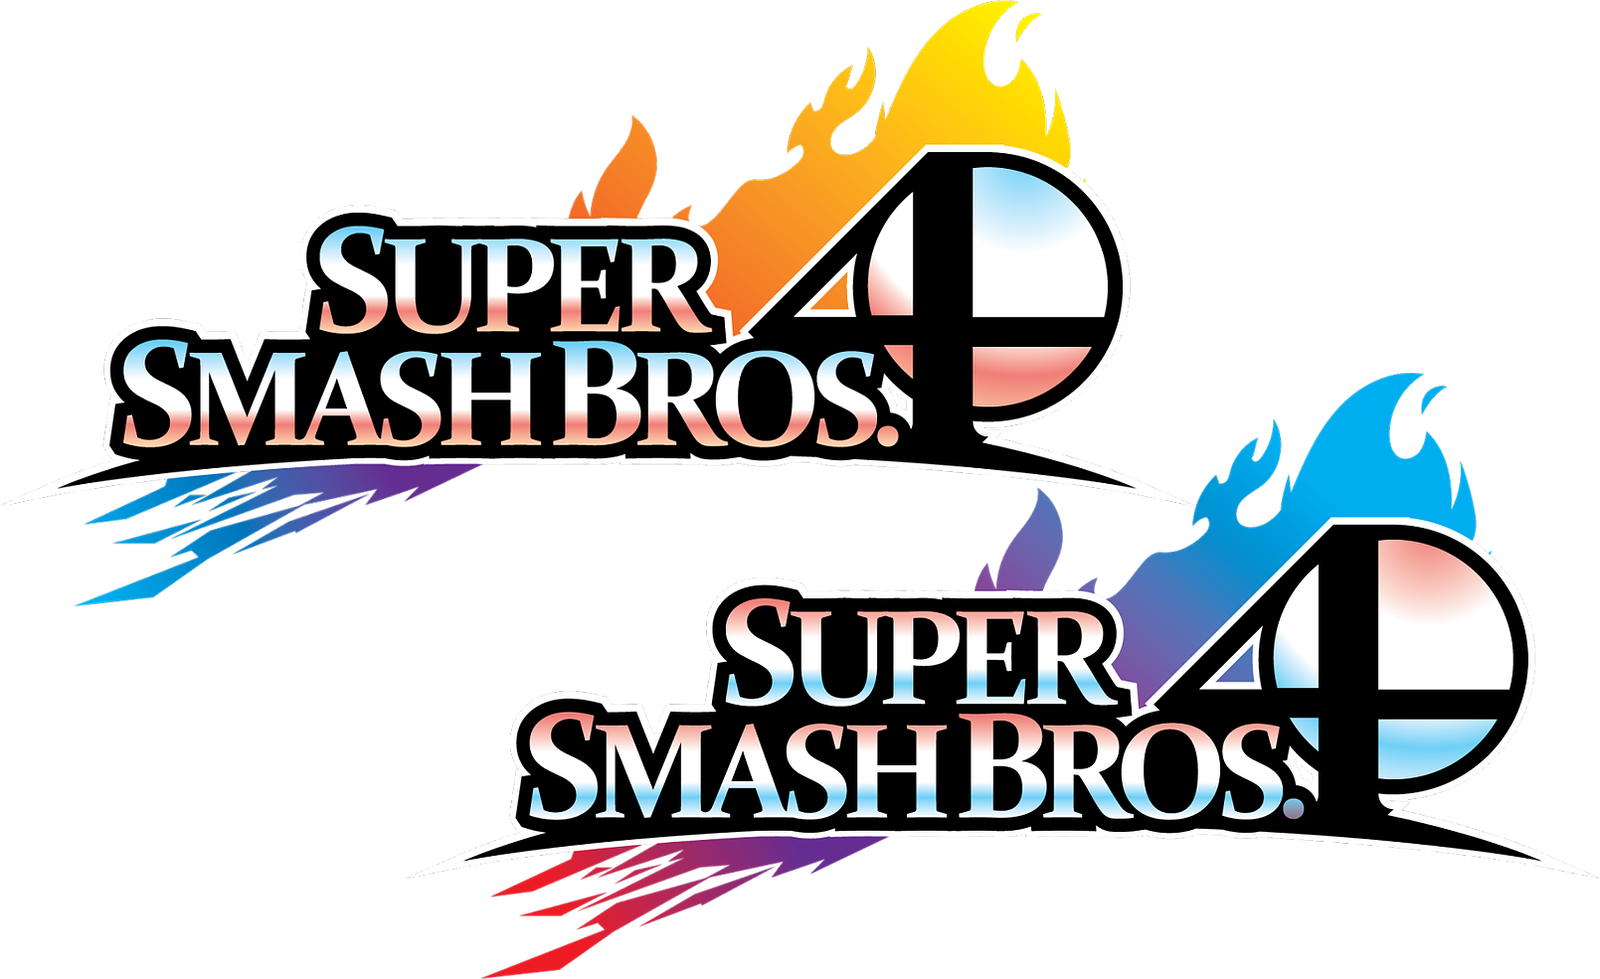 Smash Bros 4 Logo Concept - Super Smash Bros. For Nintendo 3ds And Wii U (1600x979)